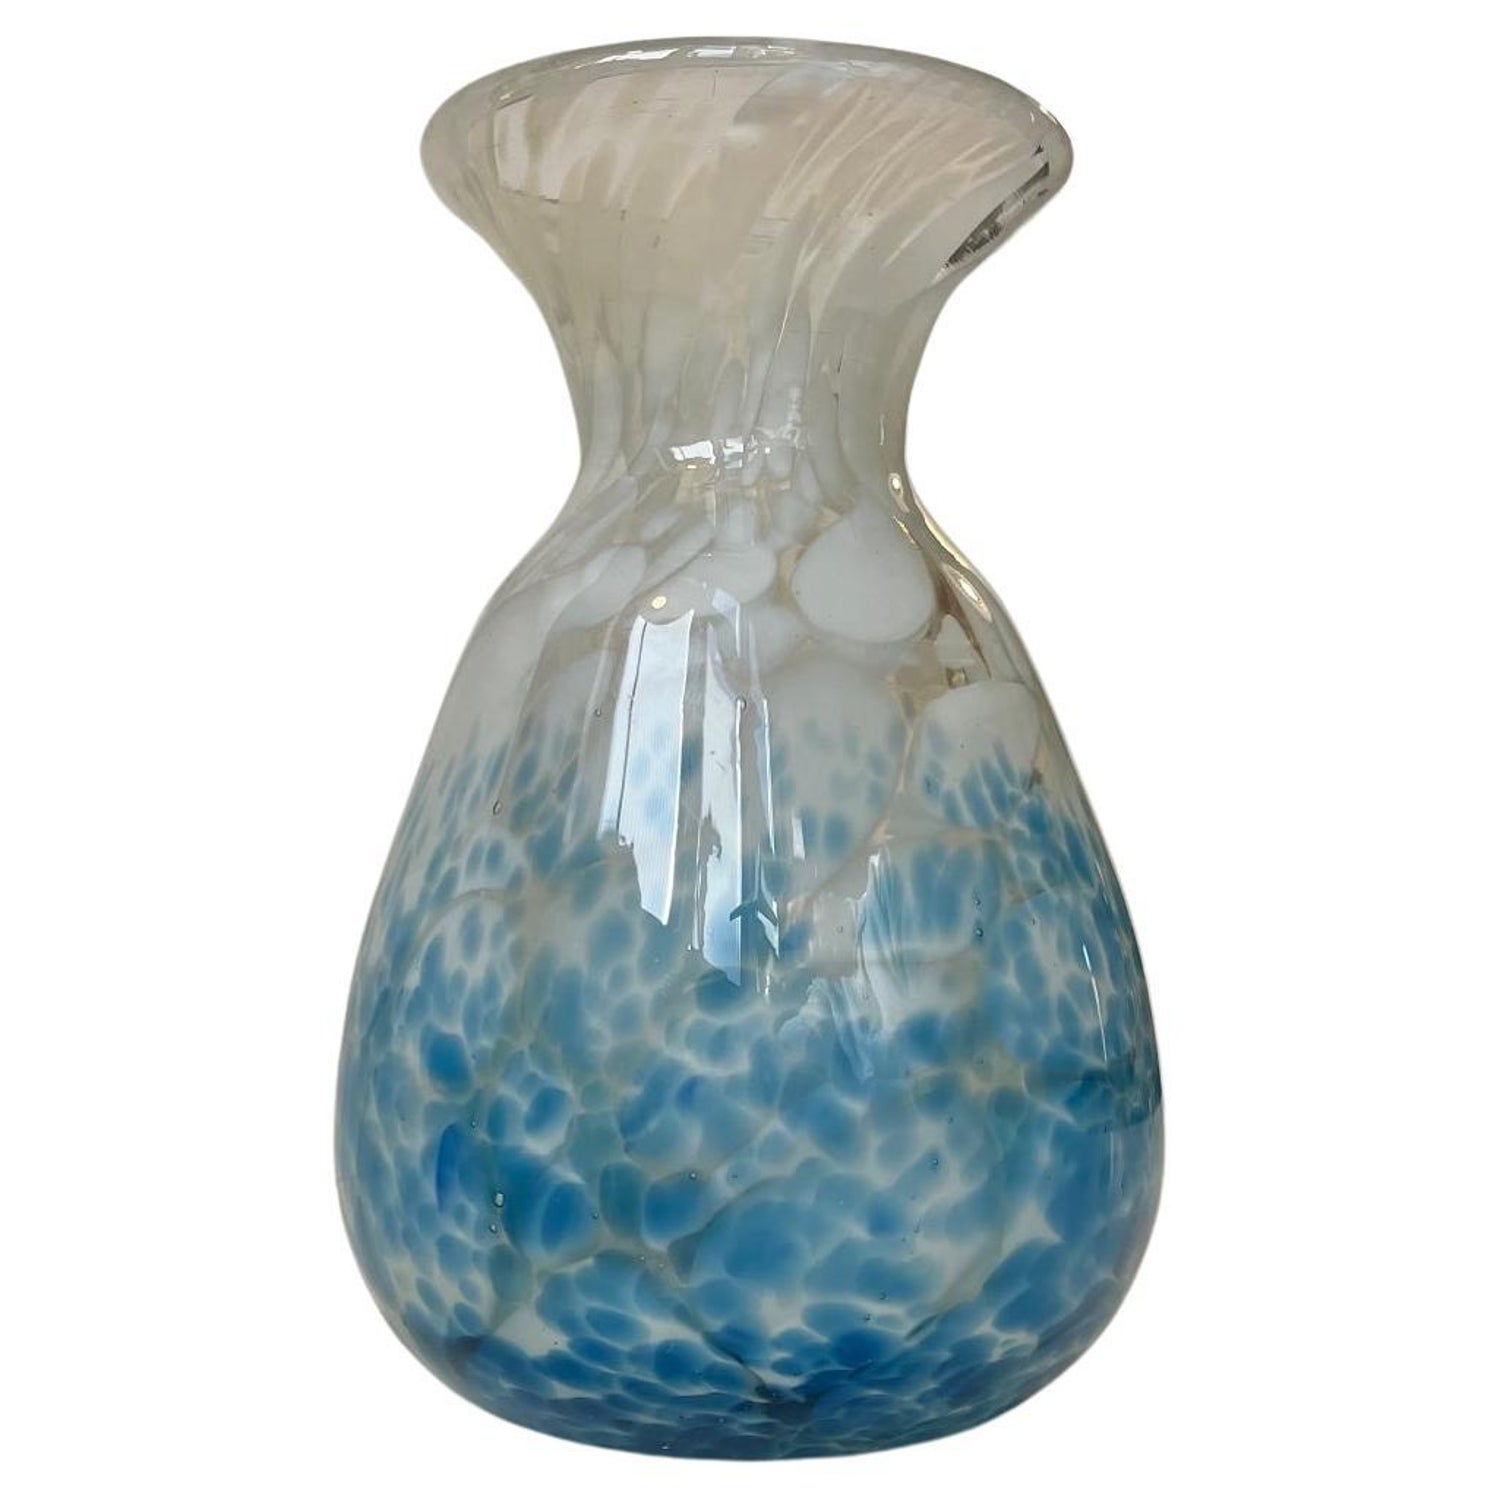 Spatter Glass Vase - 6 For Sale on 1stDibs